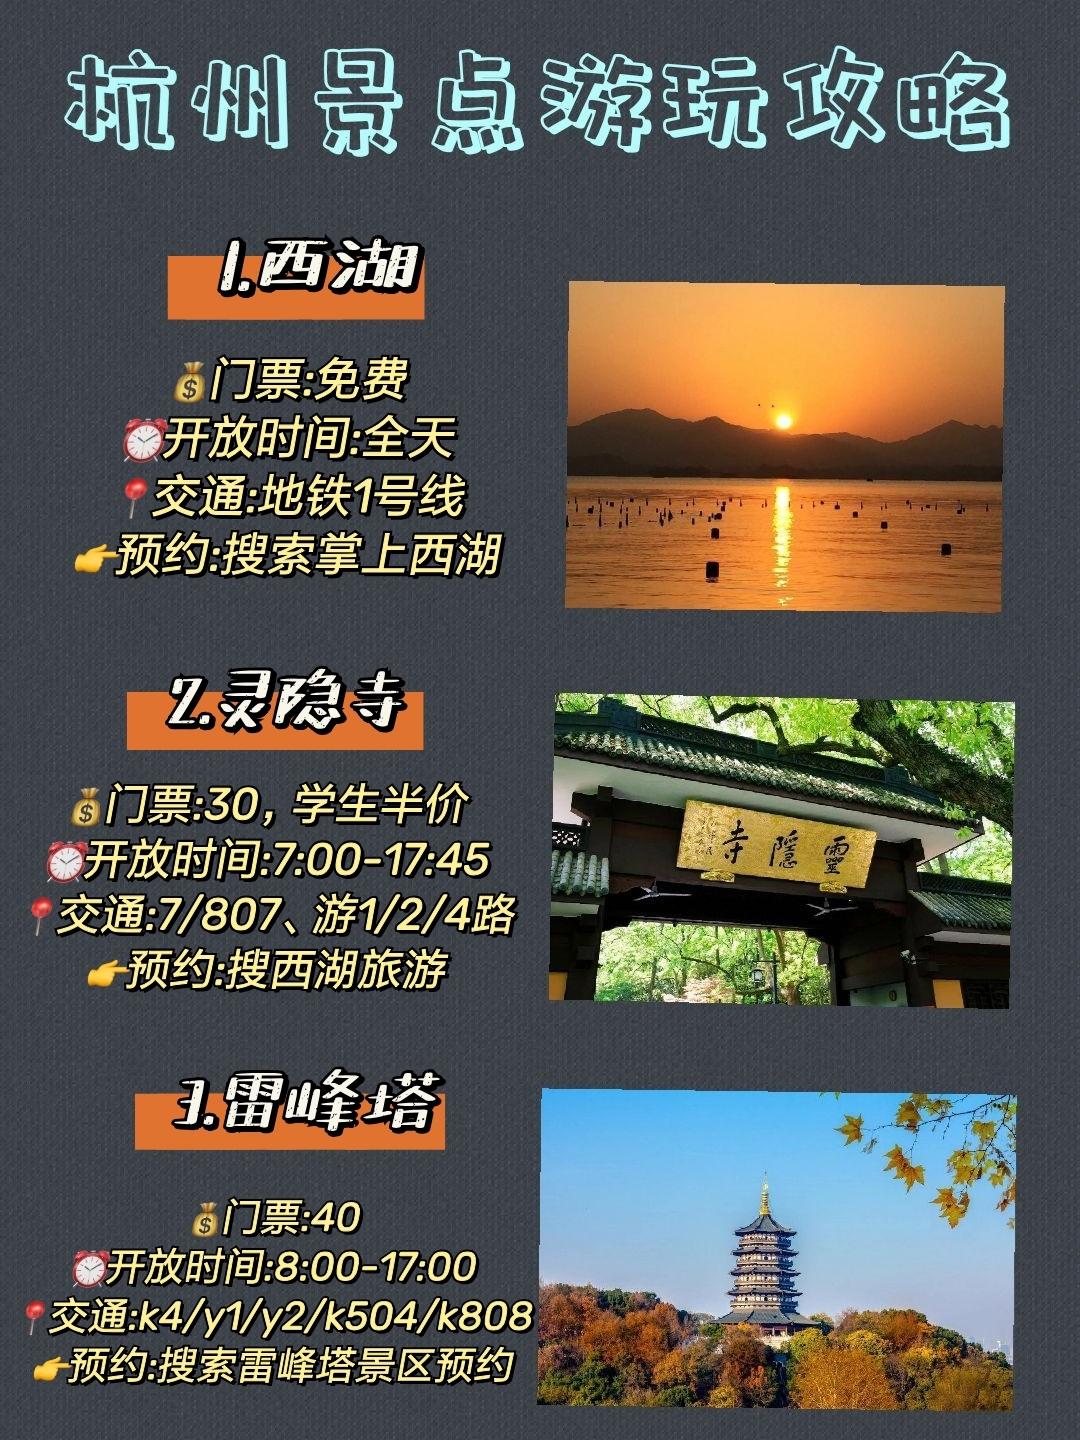 杭州旅游攻略景点门票预约,杭州行李寄存及杭州地铁沿线景点